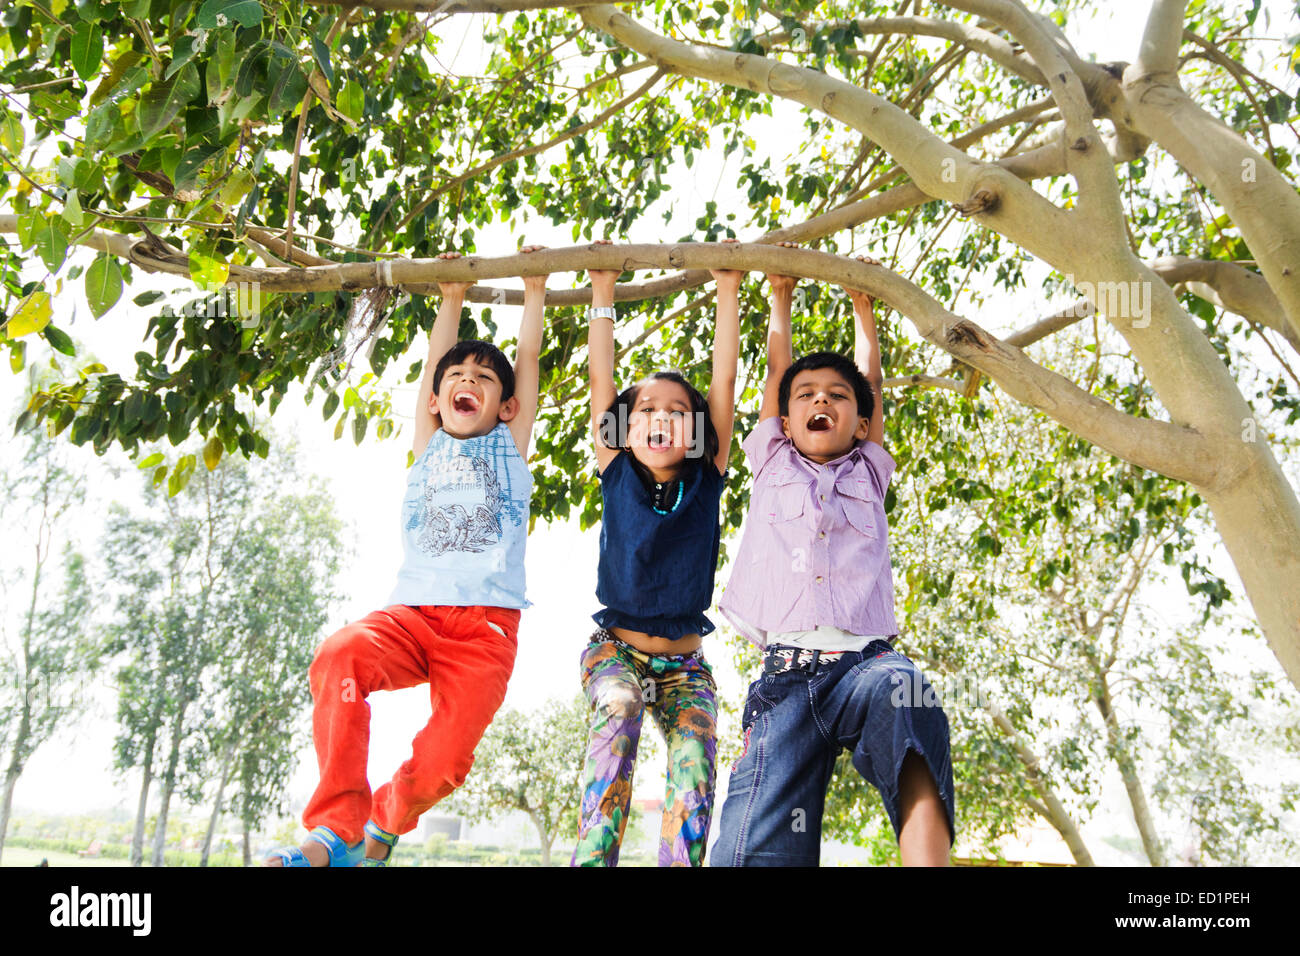 Les enfants indiens park Hanging Tree Trunk Banque D'Images